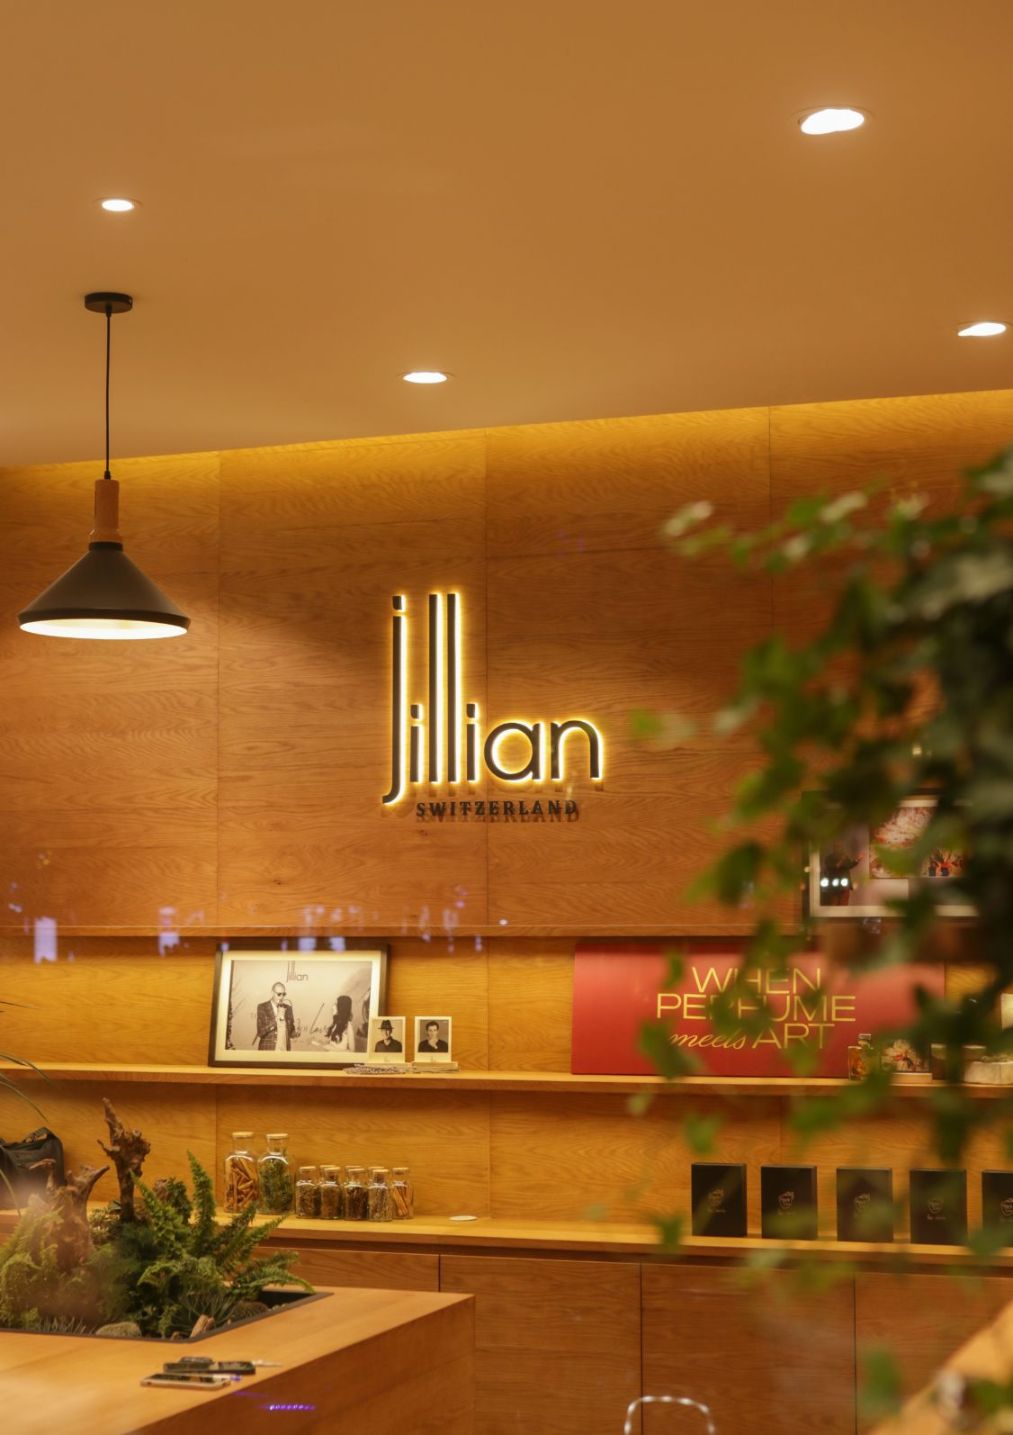 Jillian Switzerland nước hoa Thụy Sĩ Jillian Flagship Store Hanoi 1 Jillian Switzerland khai trương flagship store đậm chất Thụy Sĩ tại Hà Nội